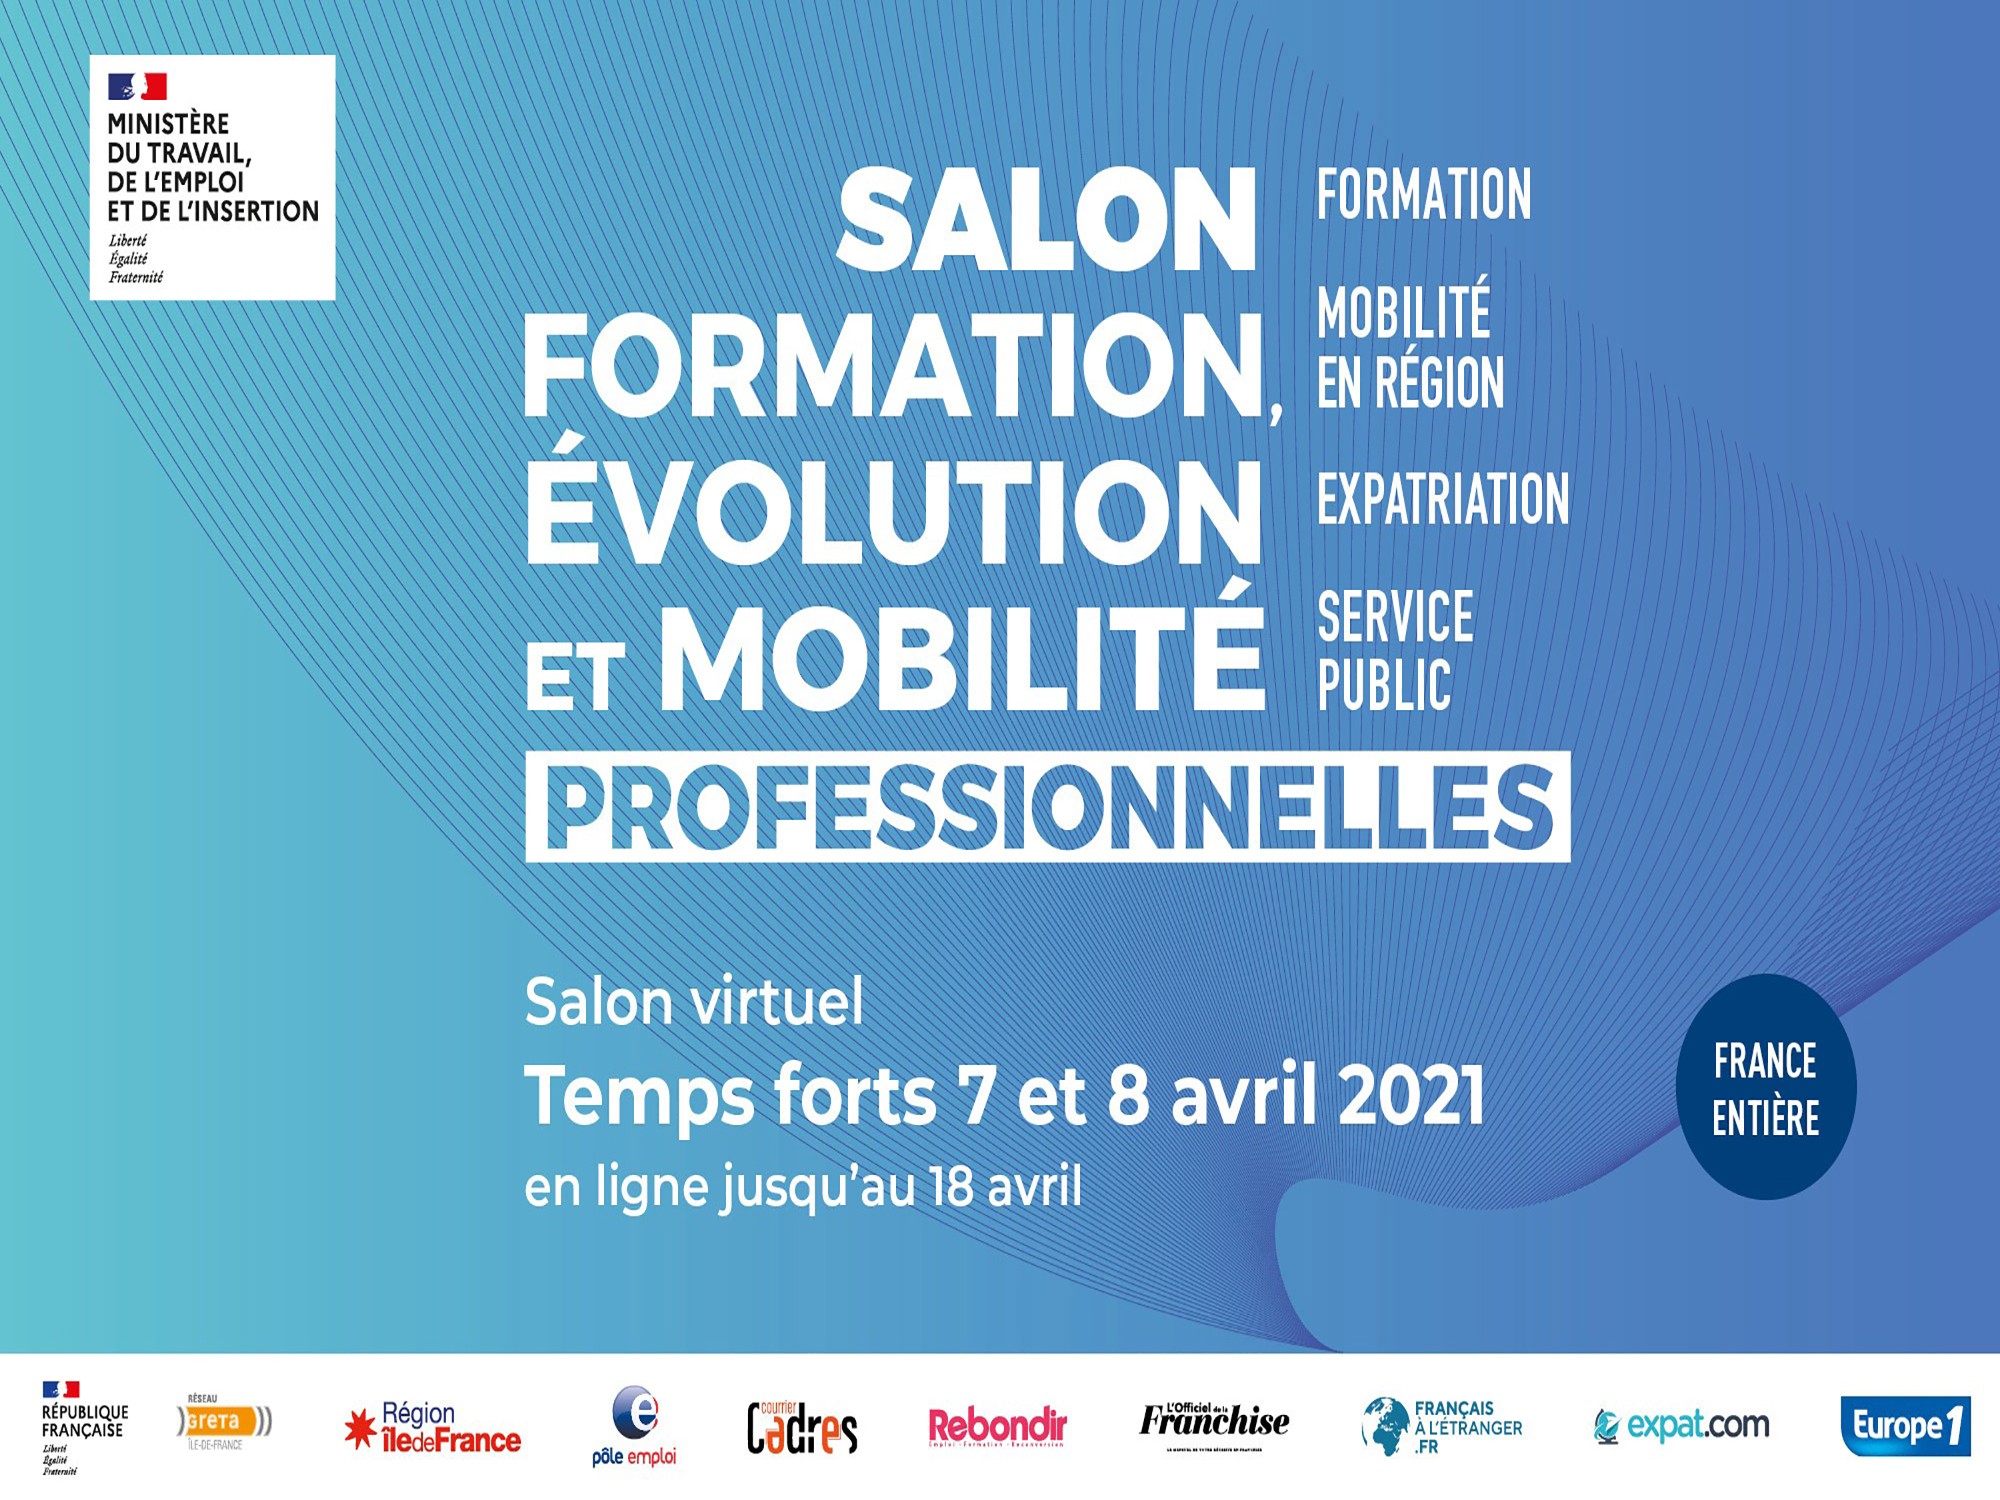 Salon virtuel « Formation, évolution et mobilité professionnelles » dès le 7 avril